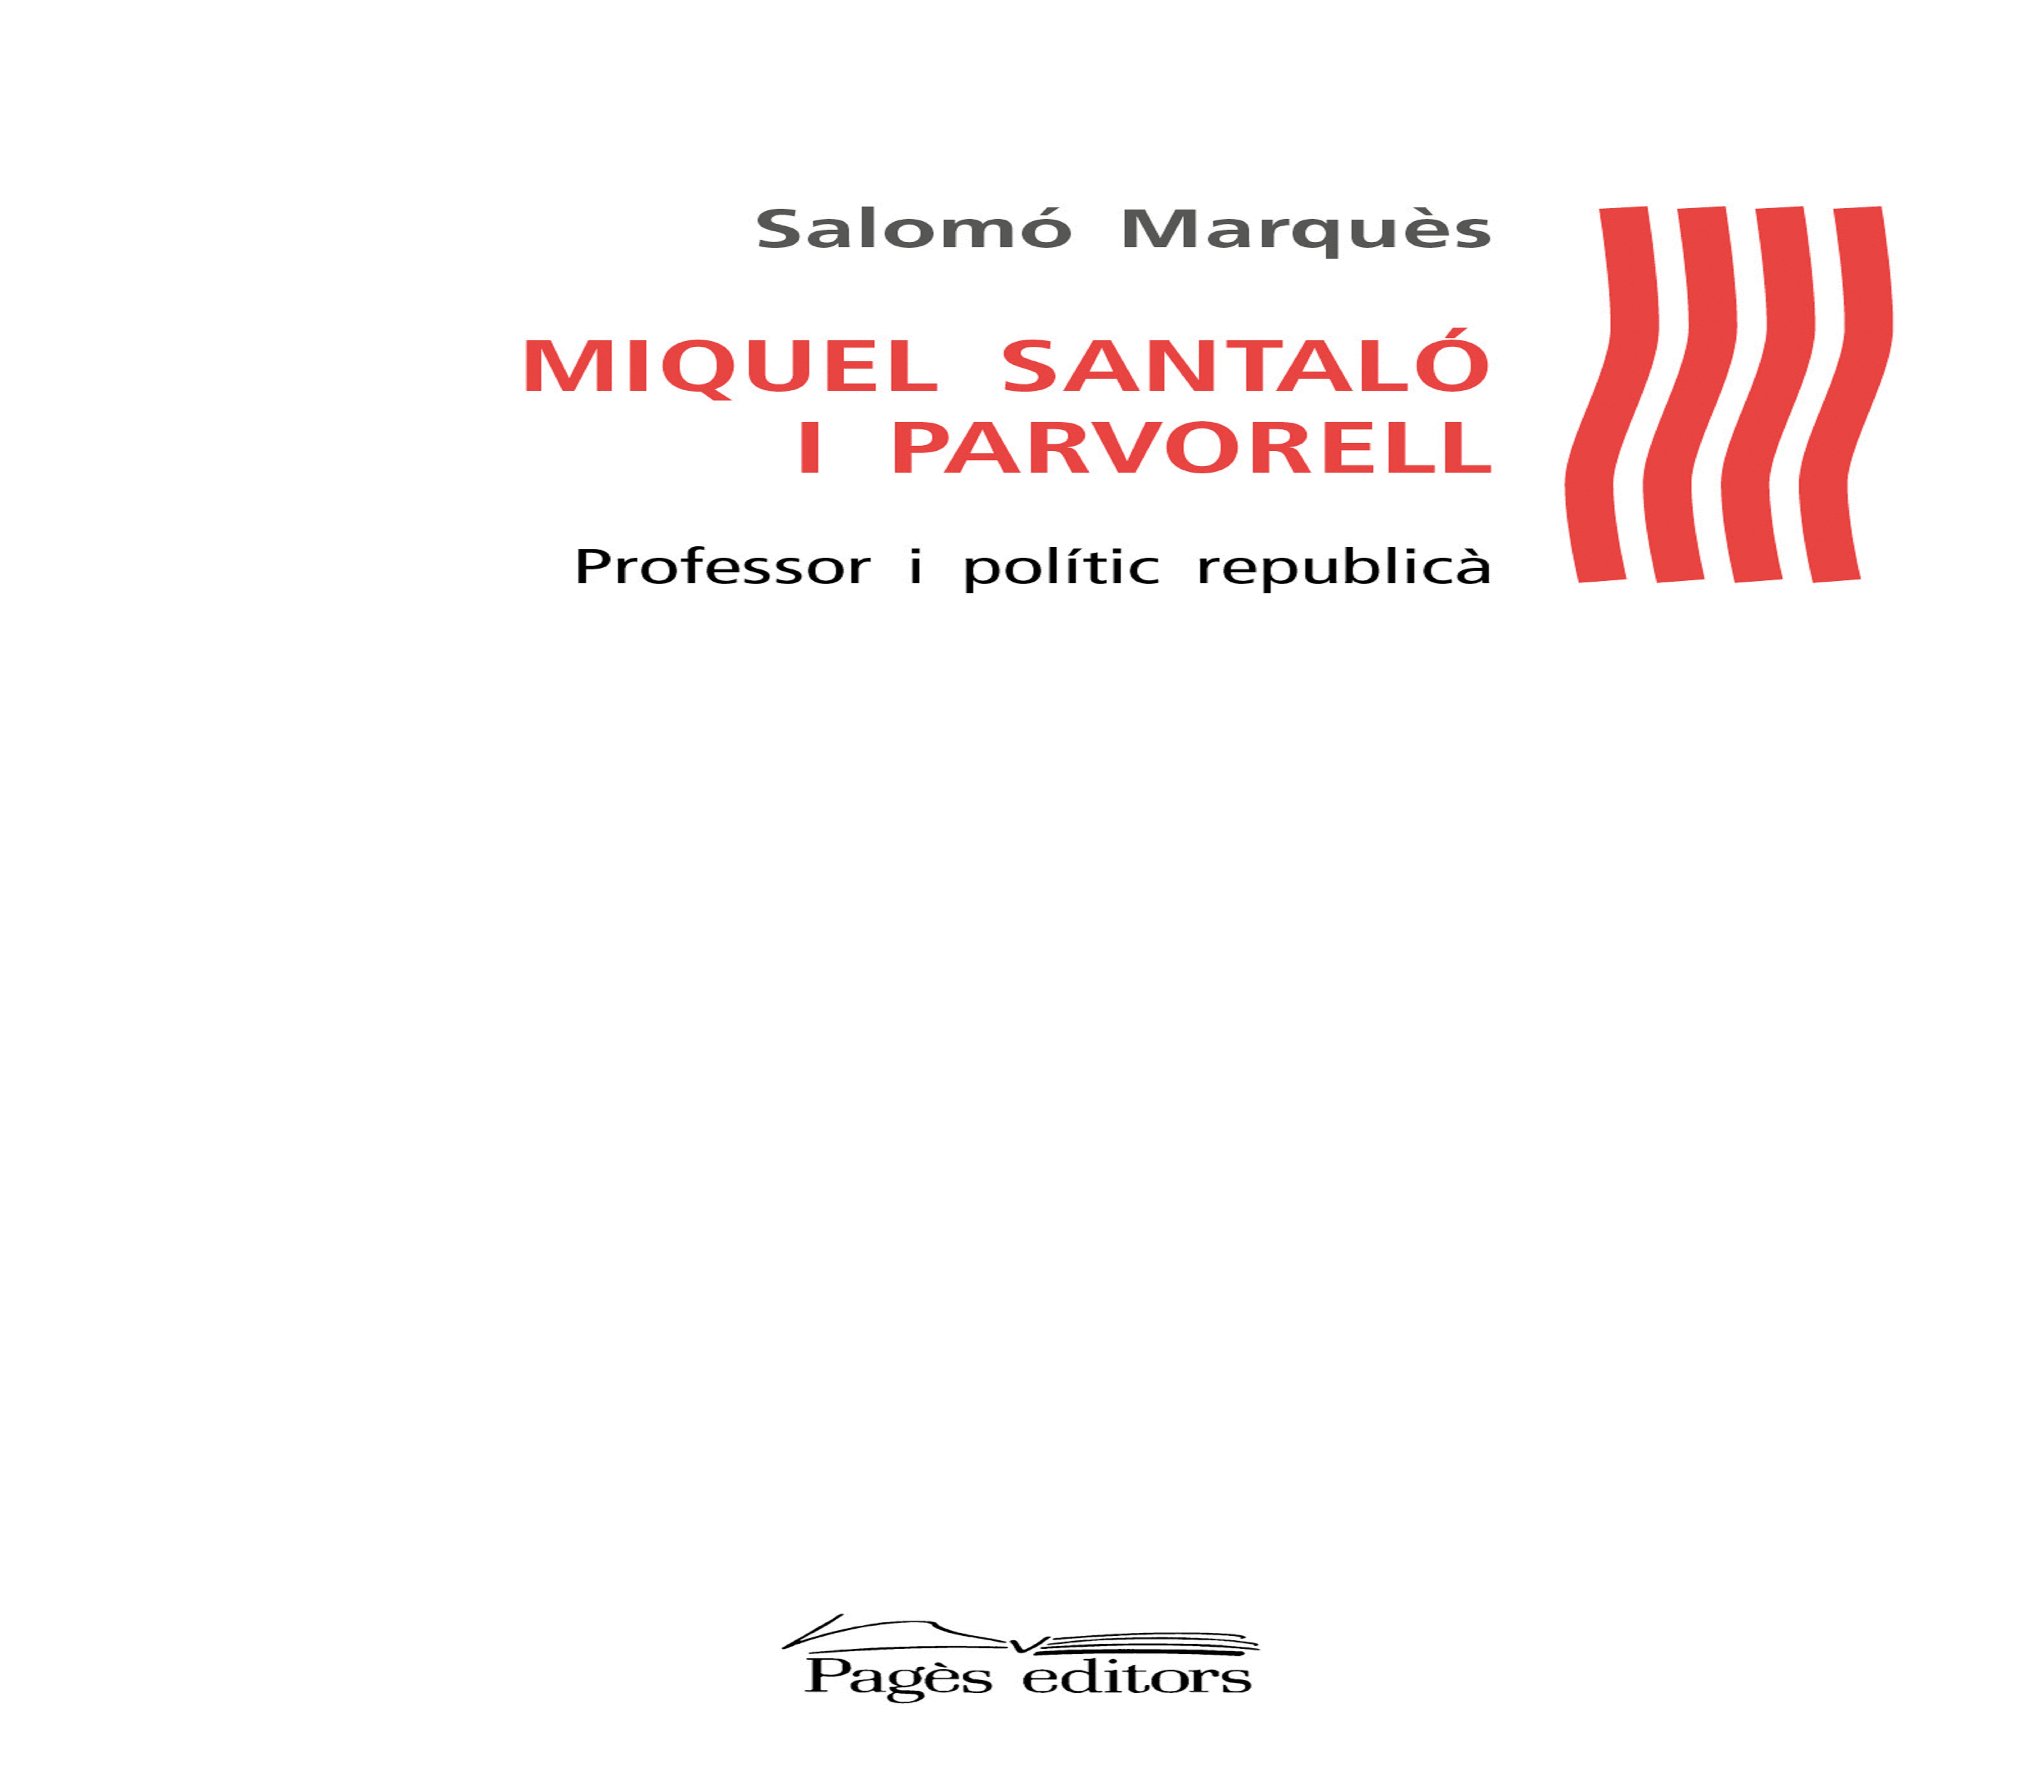 presentacio-del-llibre-miquel-santalo-i-parvorell-professor-i-politic-republica-de-salomo-marques